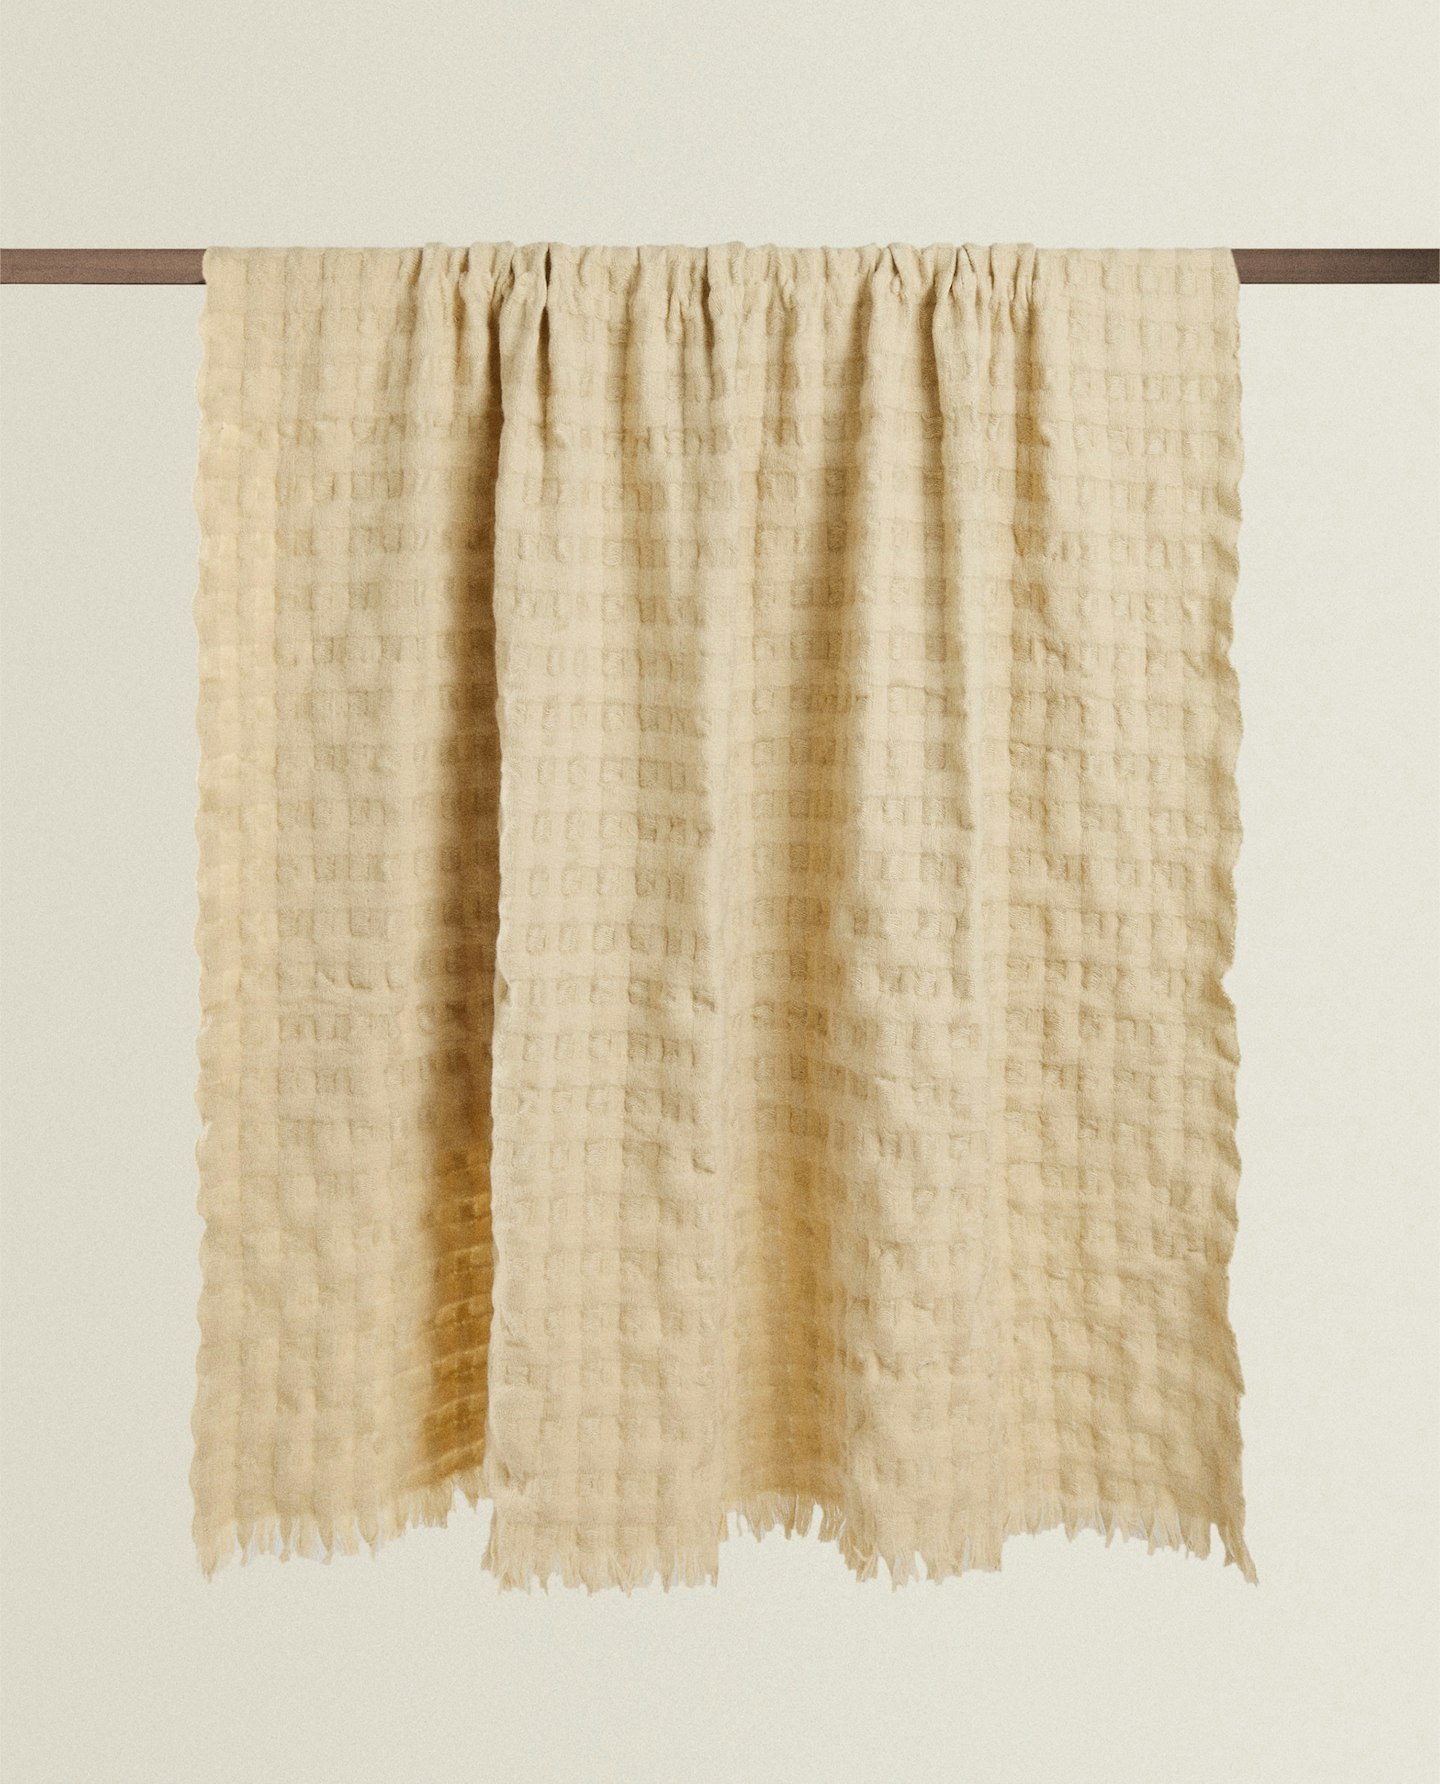 Zara Home, Waffle Knit-Effect Blanket, £49.99